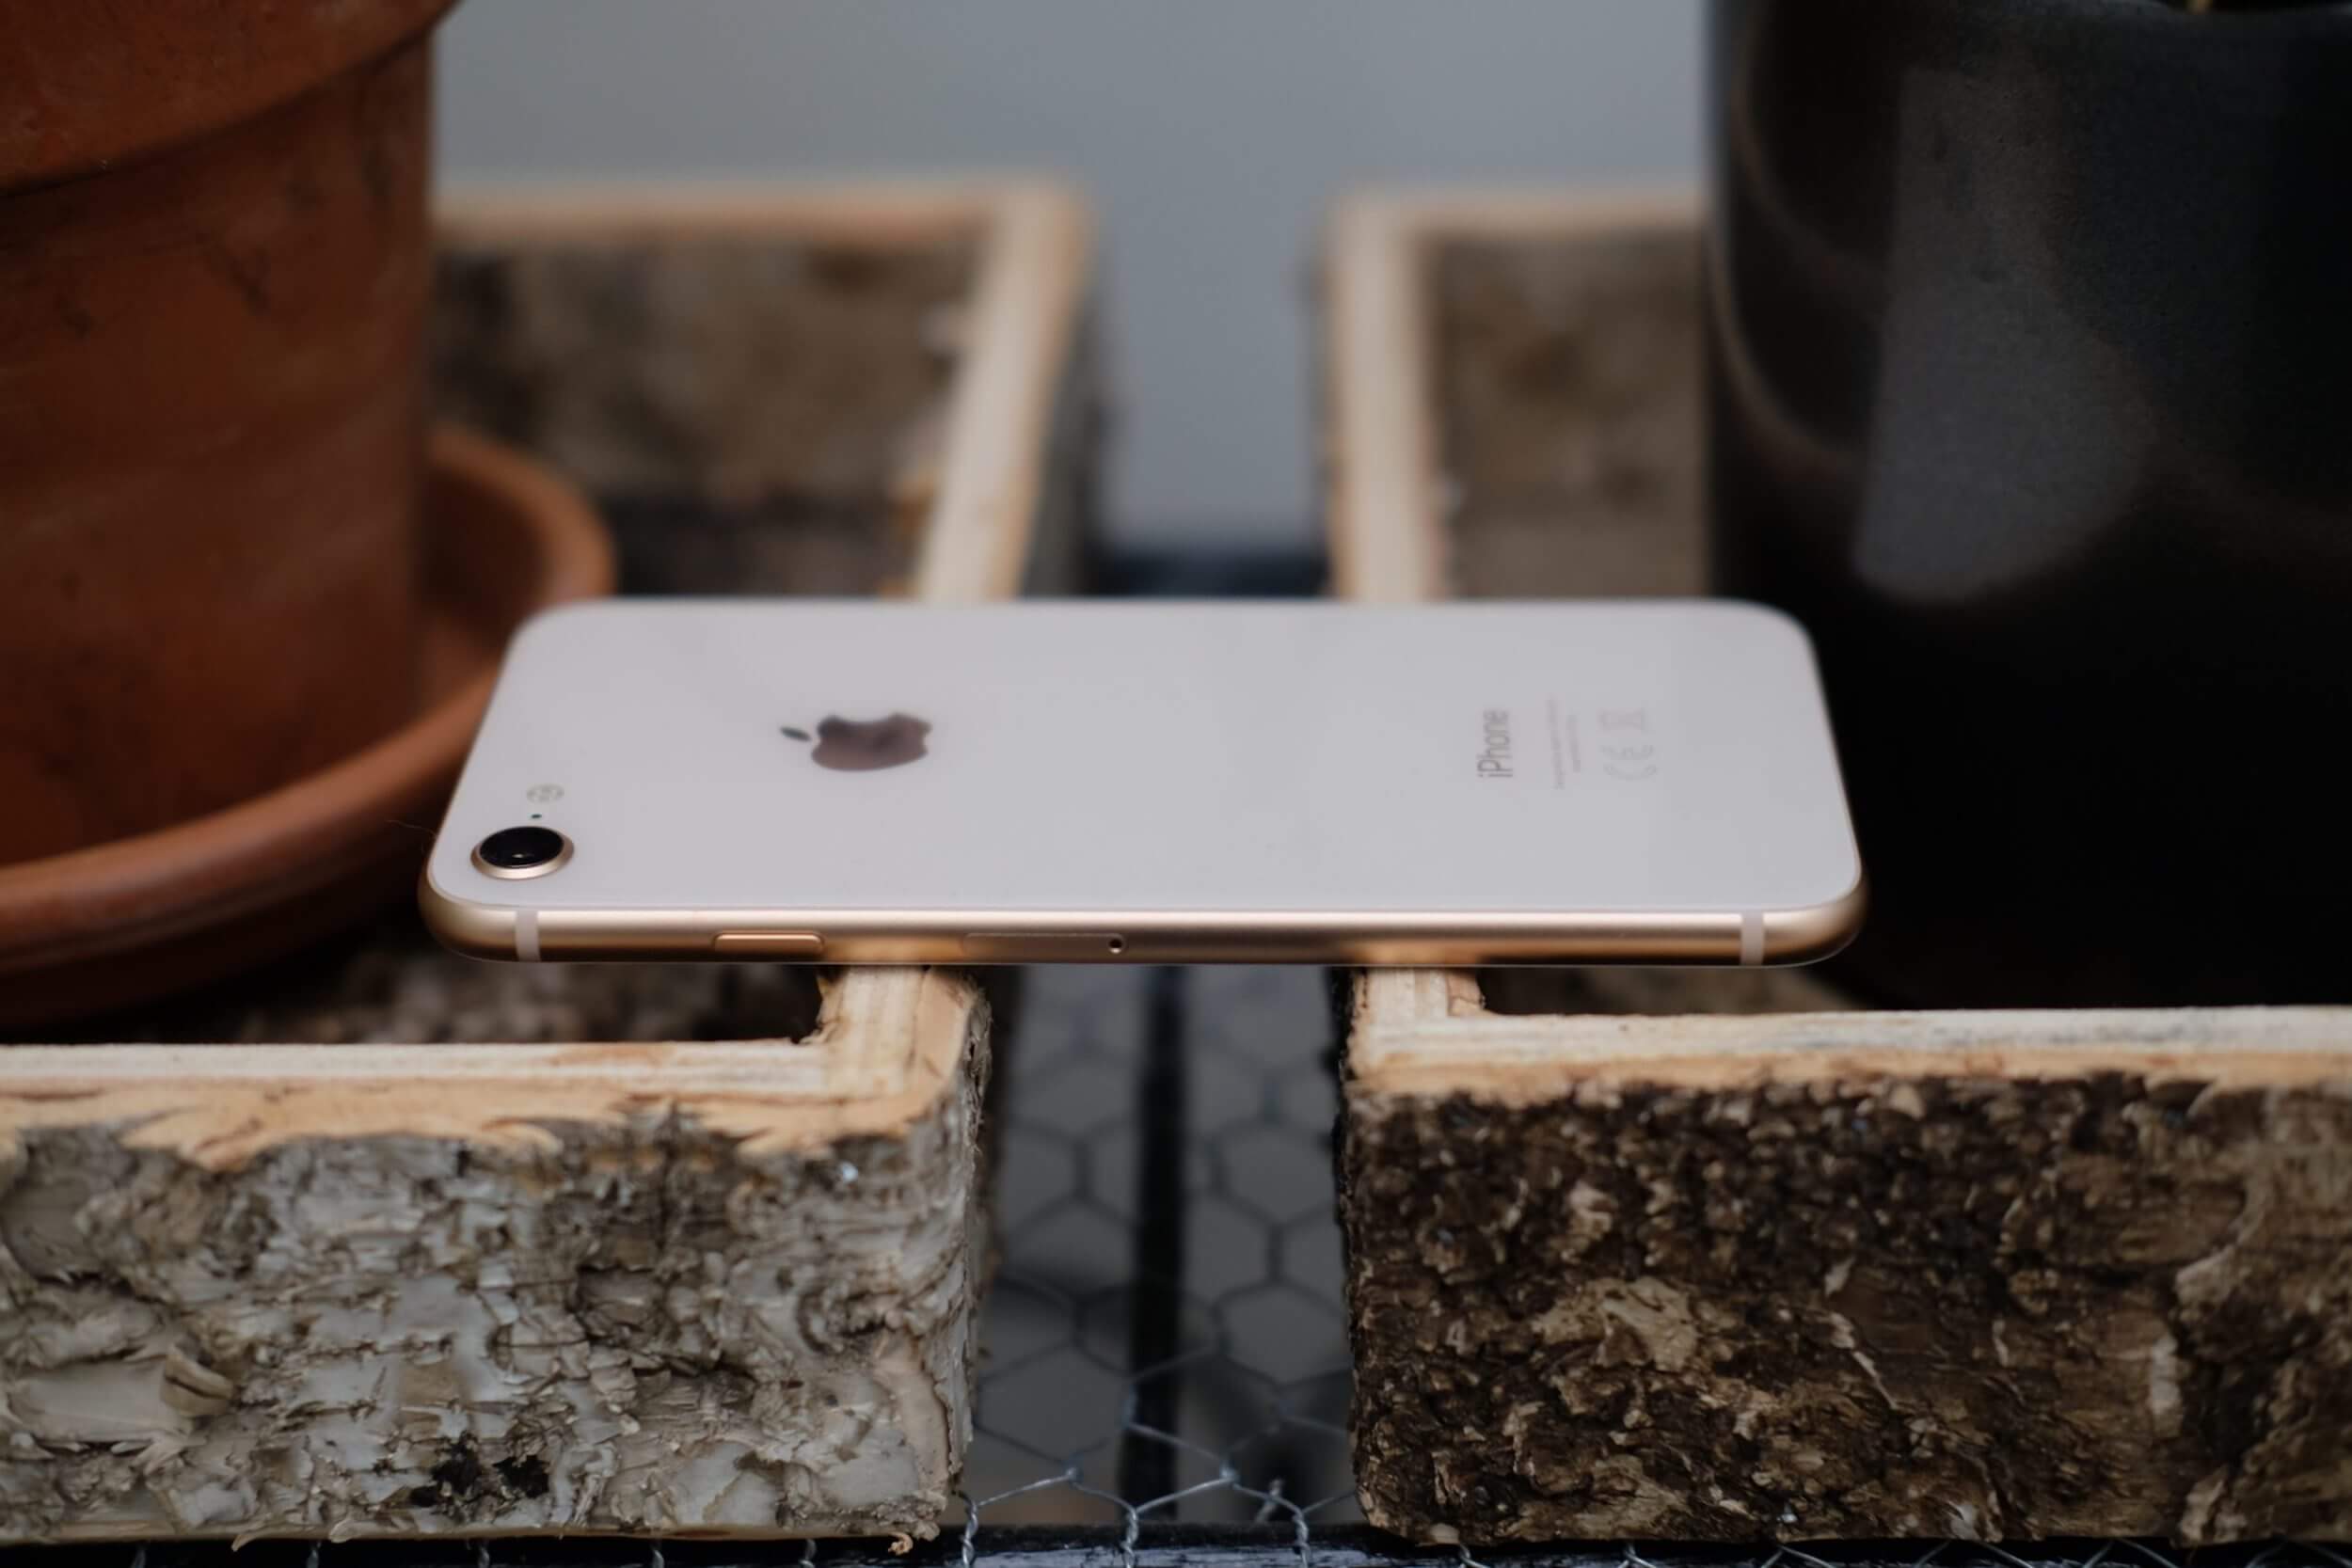 Apple ha ripreso le vendite di iPhone 8 ricondizionati: ora è l'iPhone più economico, anche con cuffie e caricatore inclusi